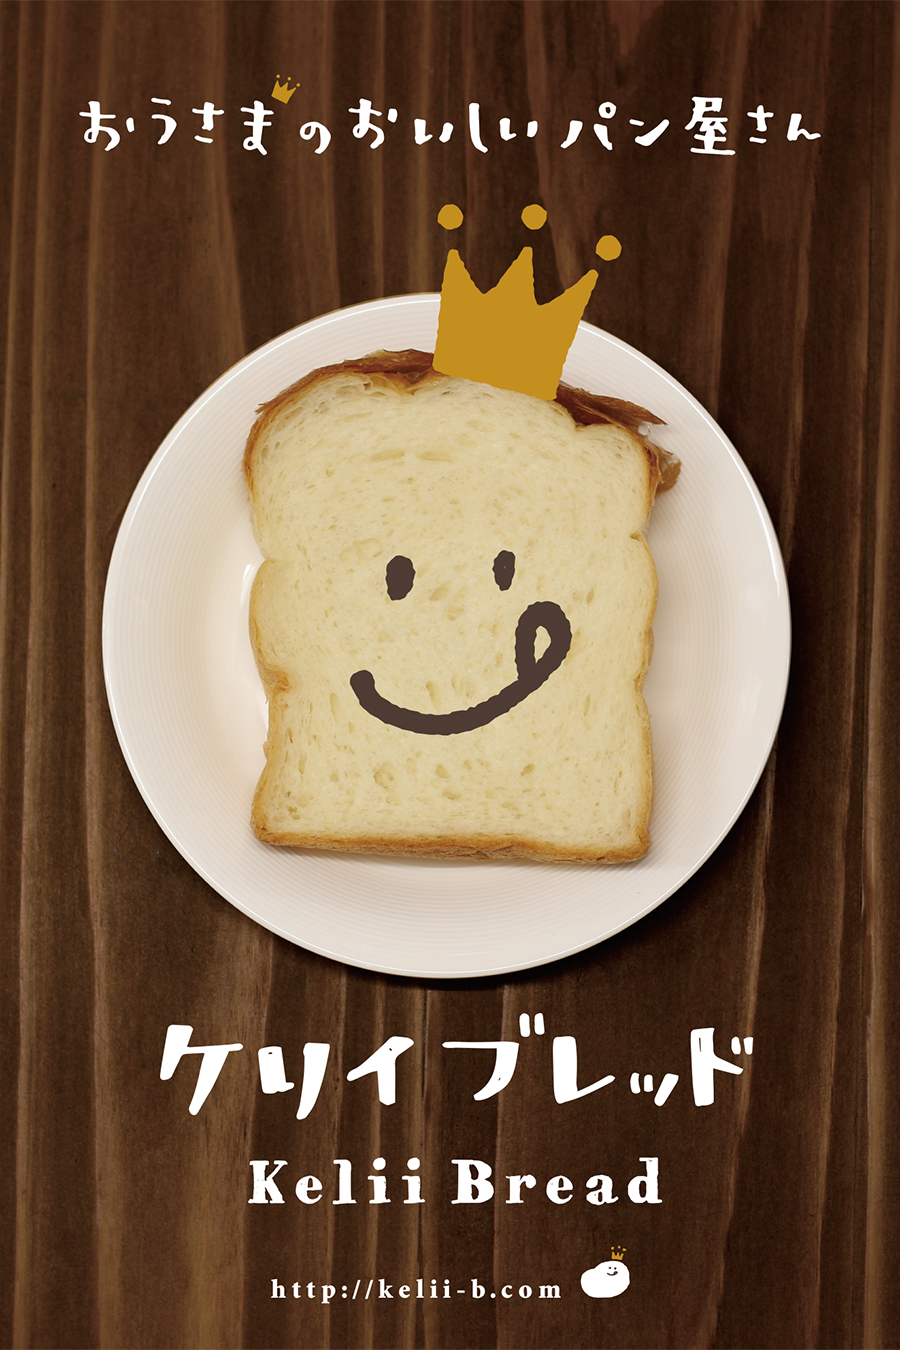 パン屋のポスターデザイン